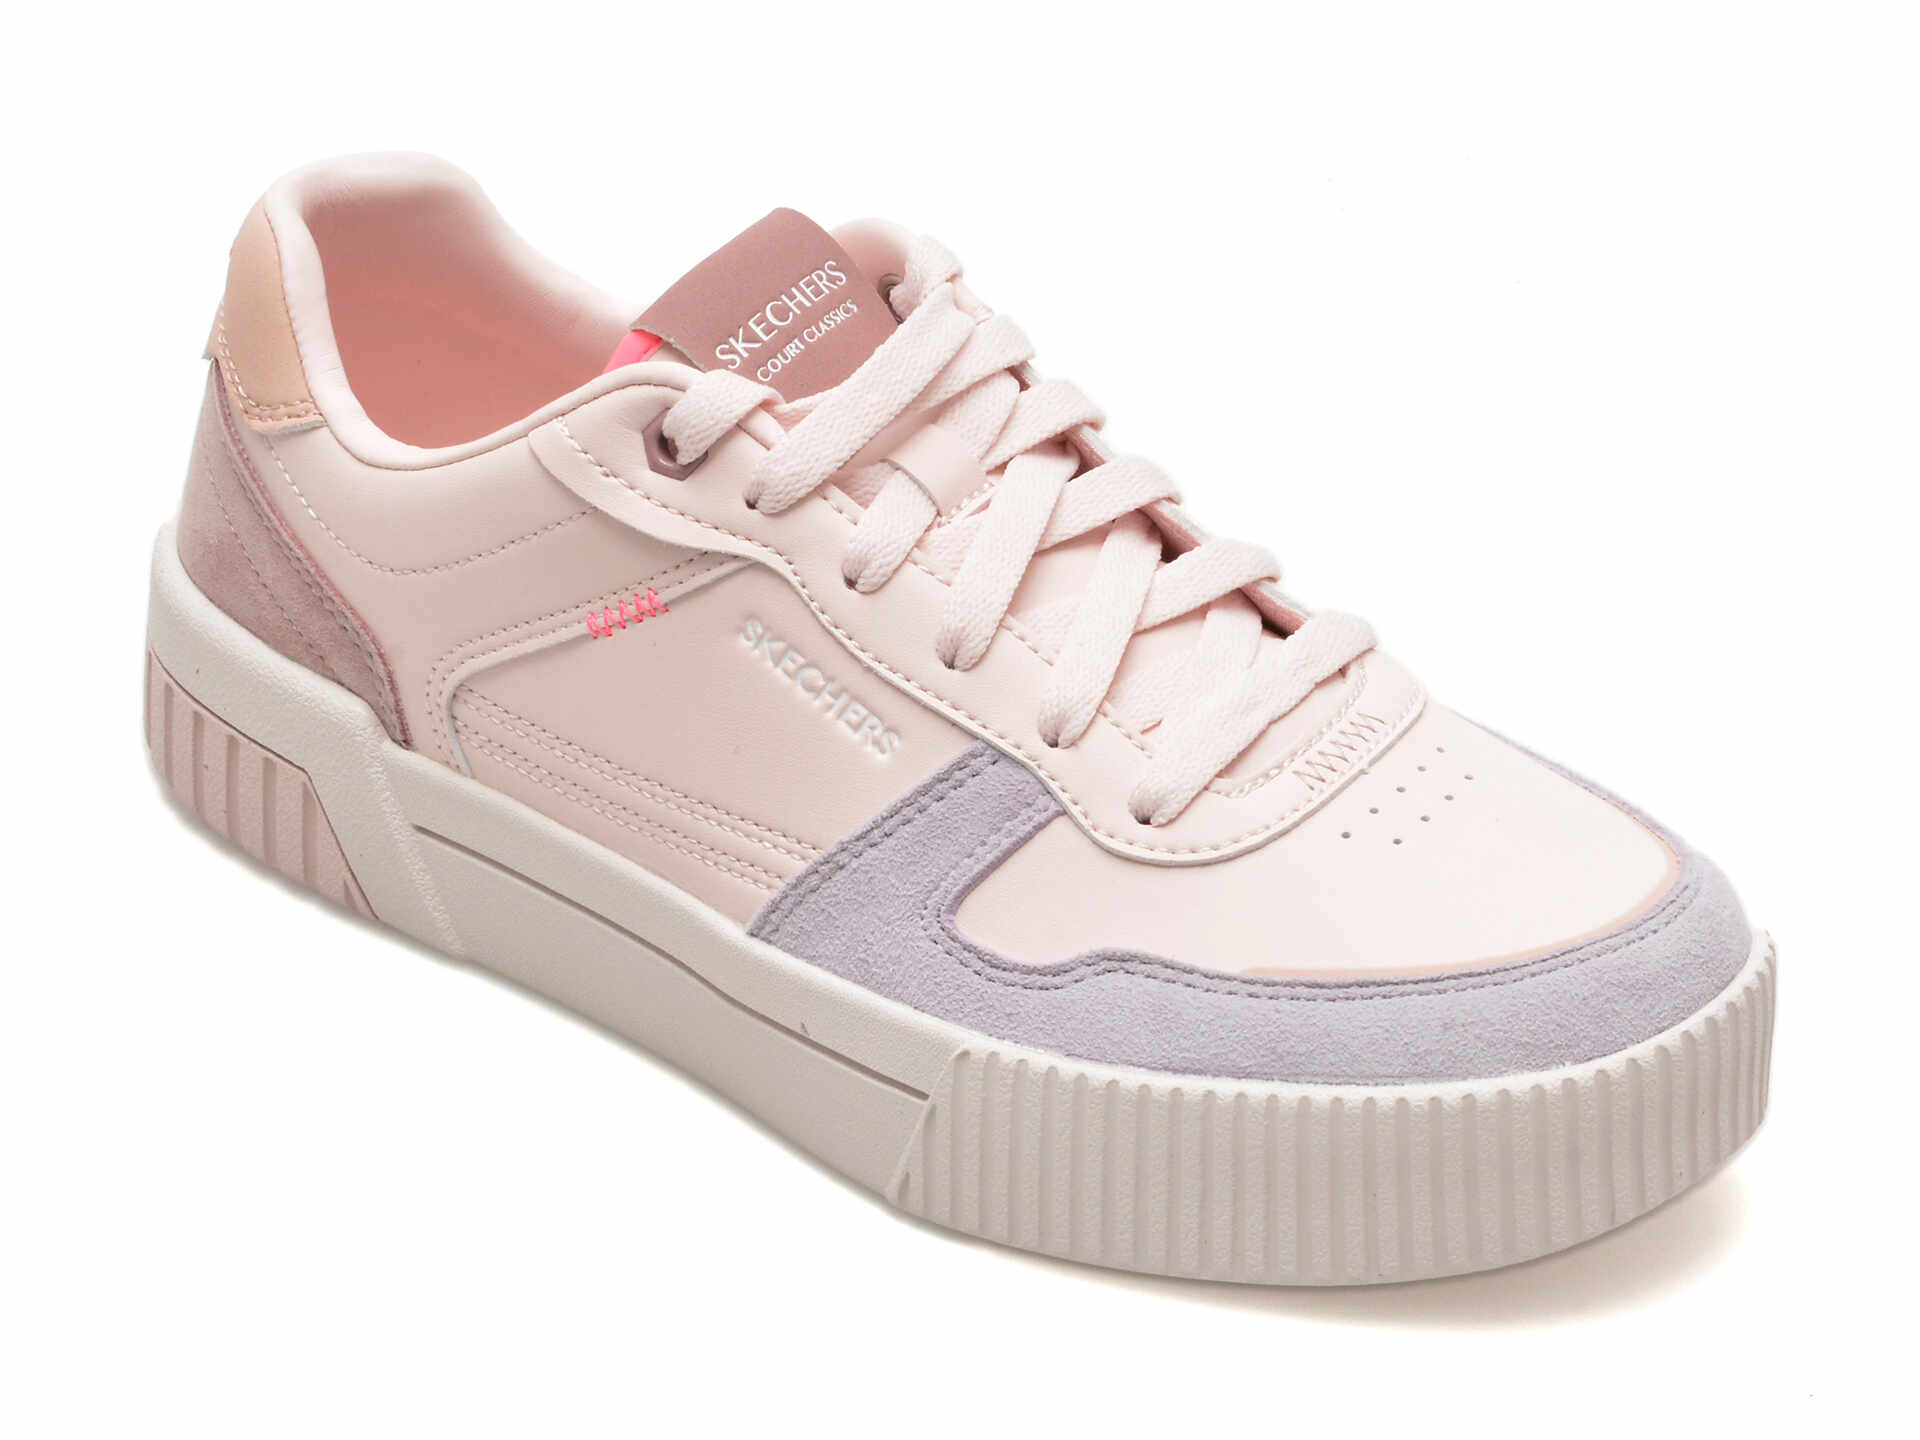 Pantofi SKECHERS roz, JADE, din piele ecologica